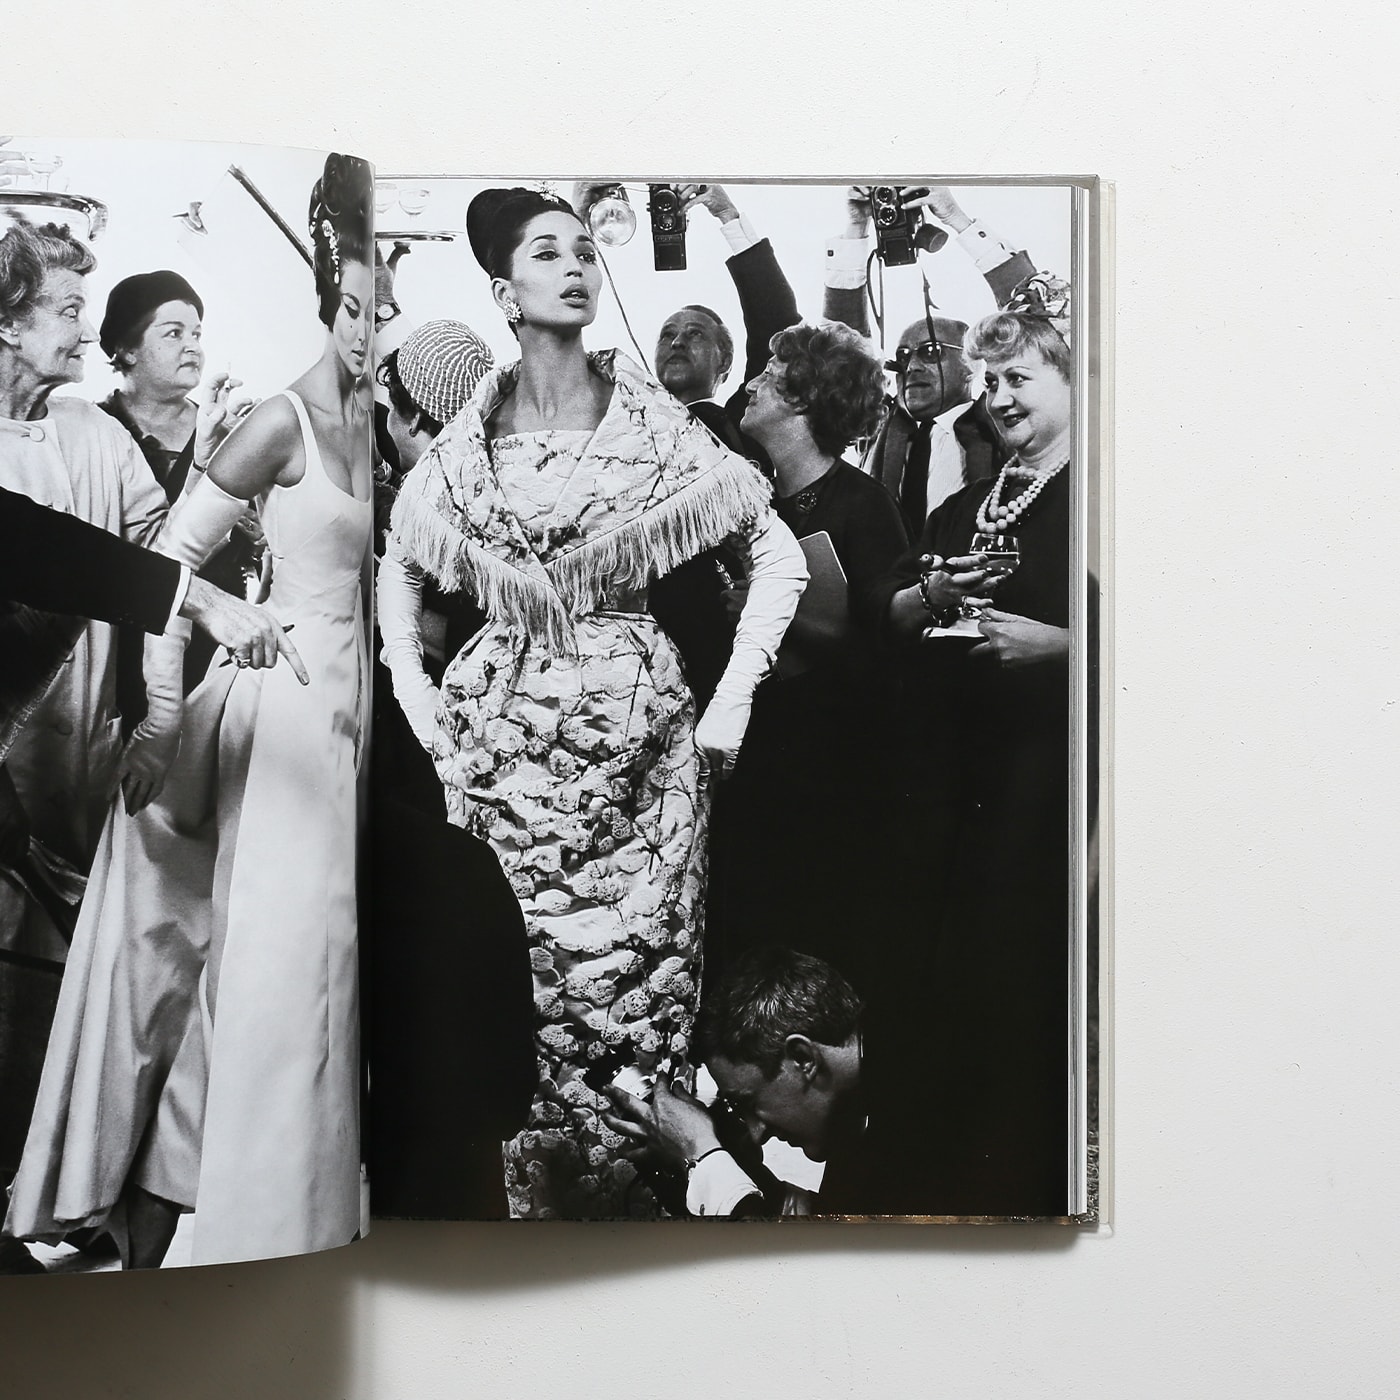 ザ・ファッション 1947-1977 アベドン写真集